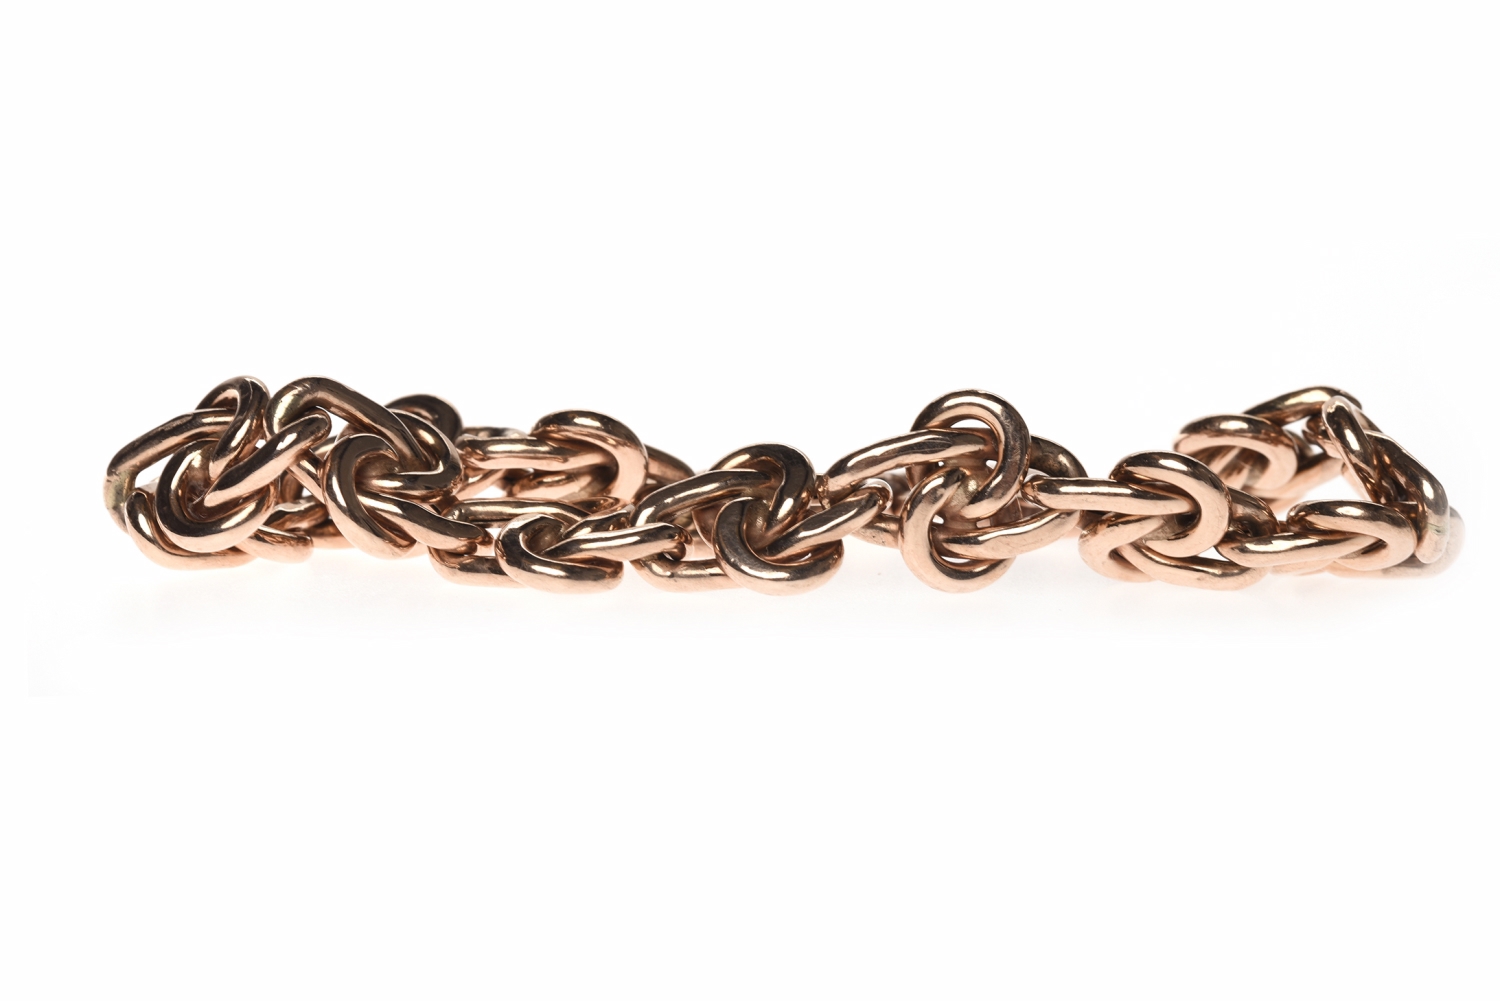 NINE CARAT ROSE GOLD BRACELET formed by knot motif links, 19cm long, 13.